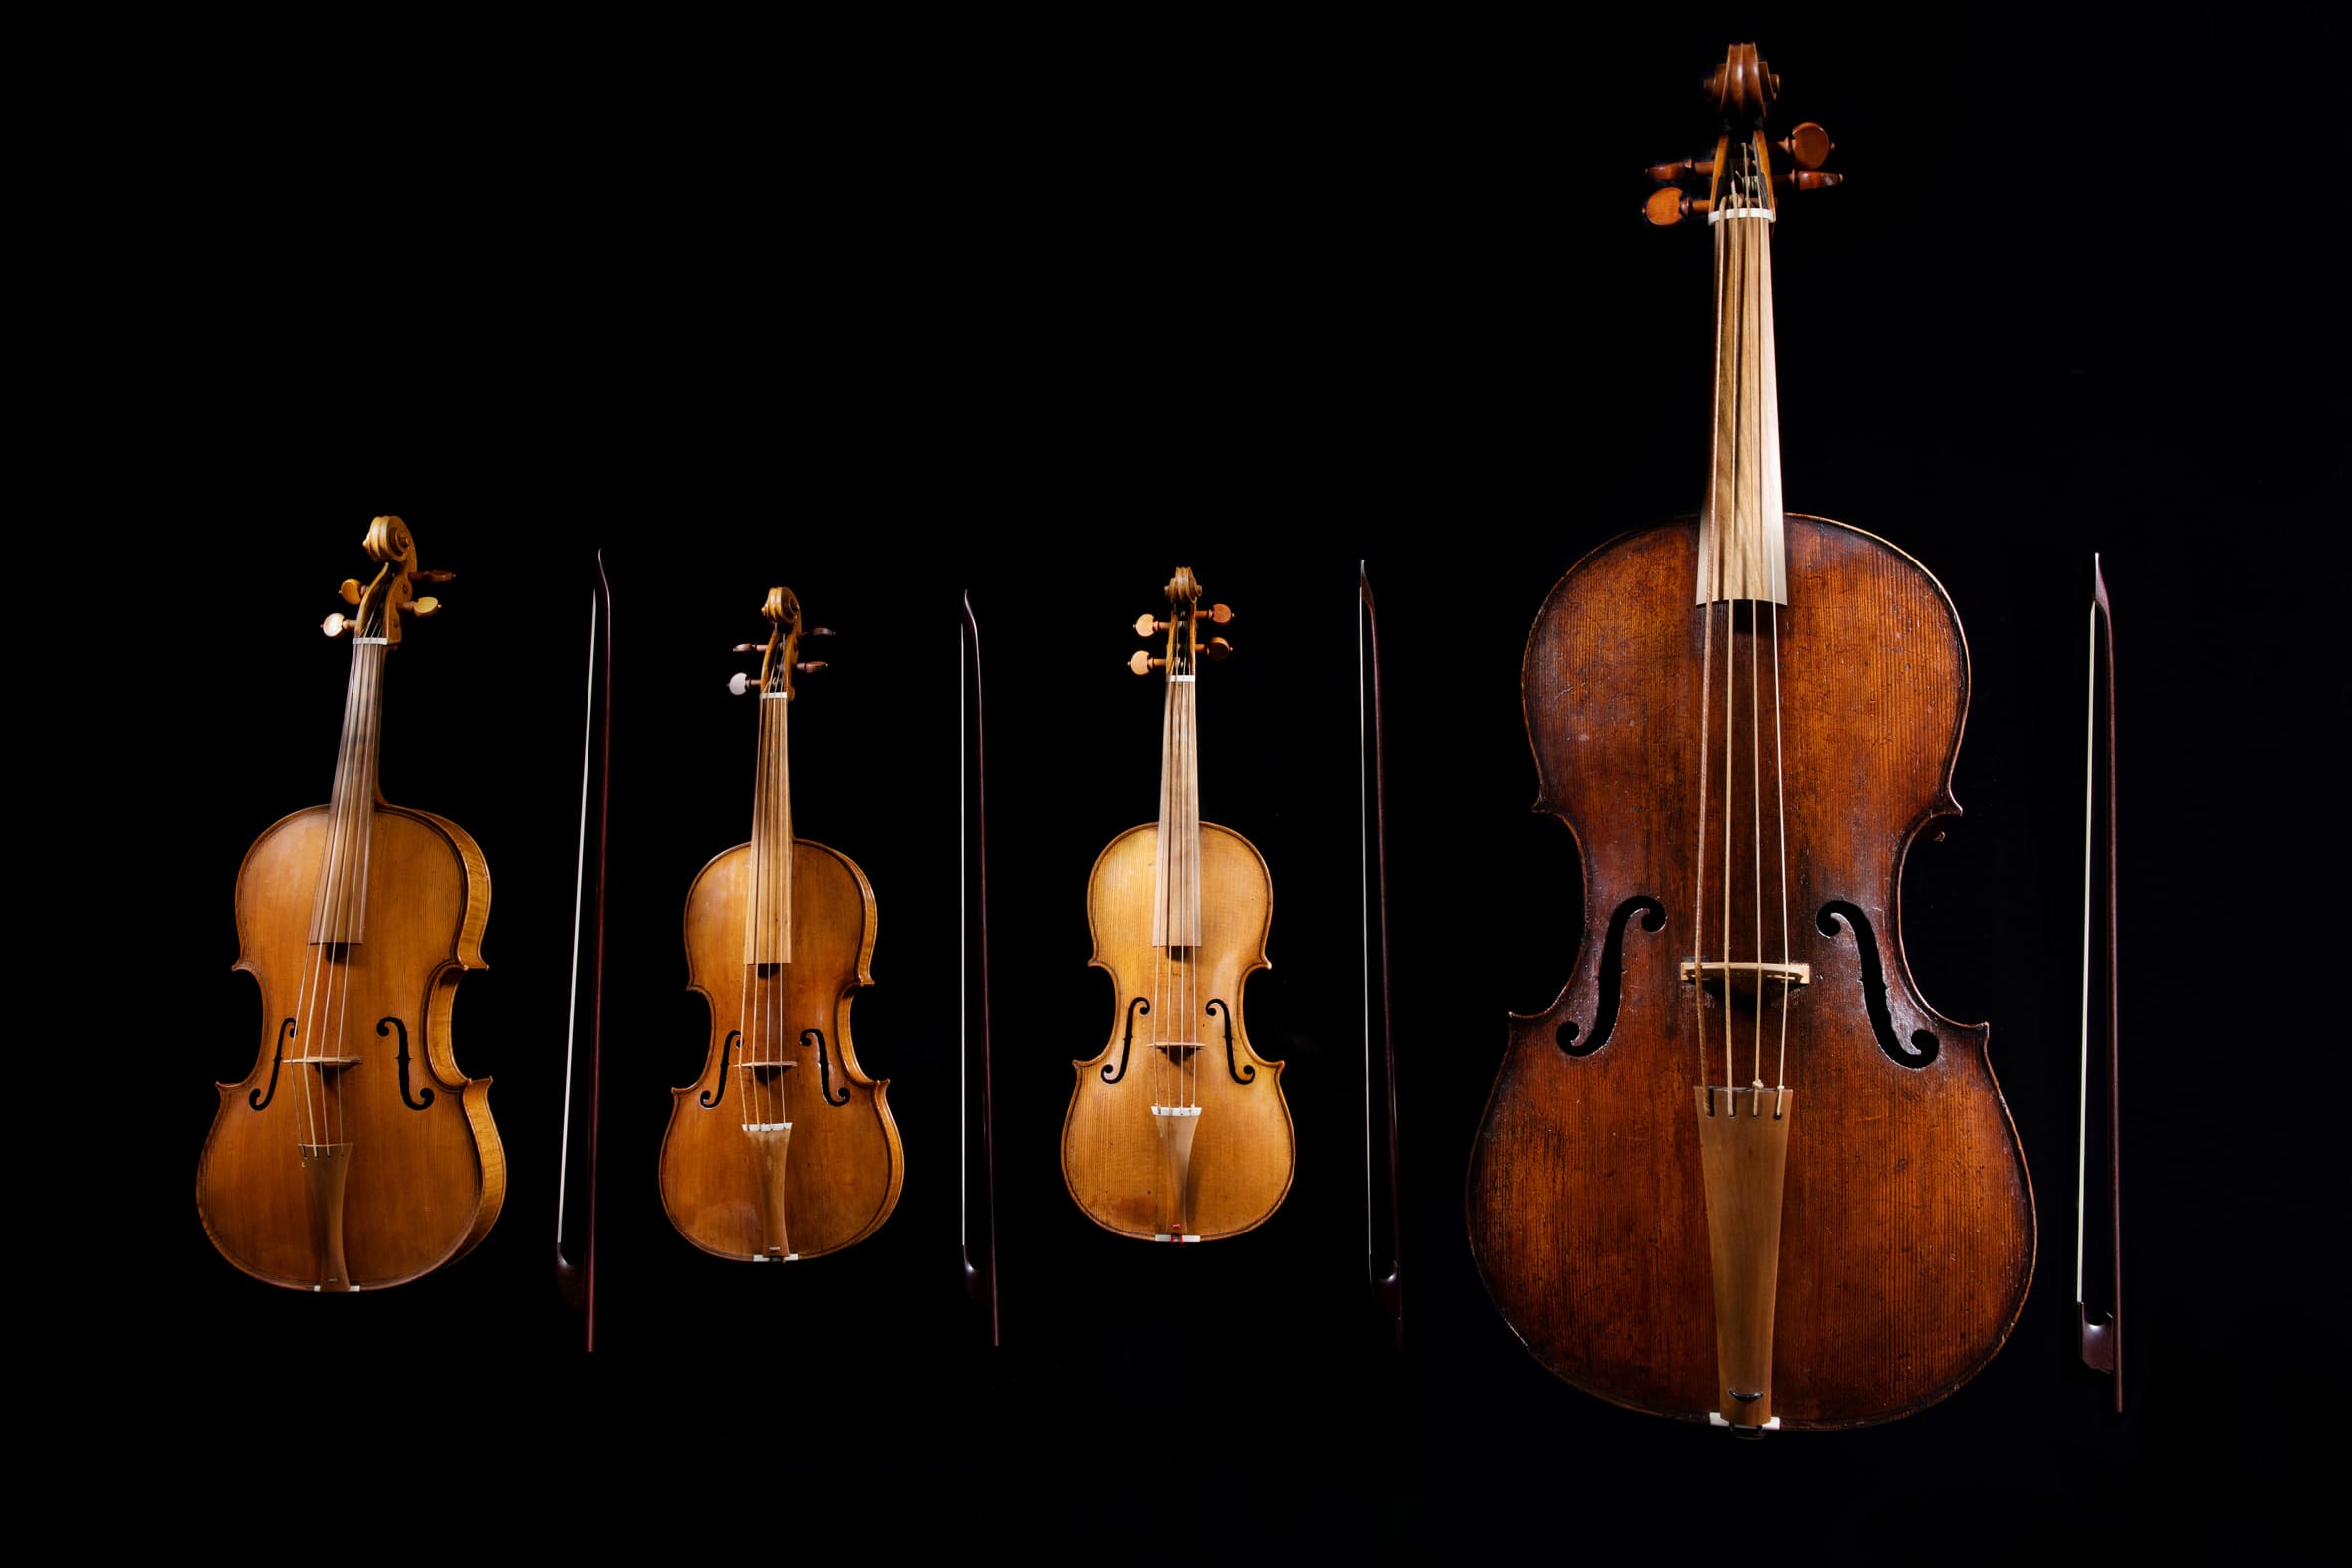 奇美提琴音樂饗宴「英格蘭的瑰麗輝煌琴音」上半場主打英國最古老的弦樂四重奏。